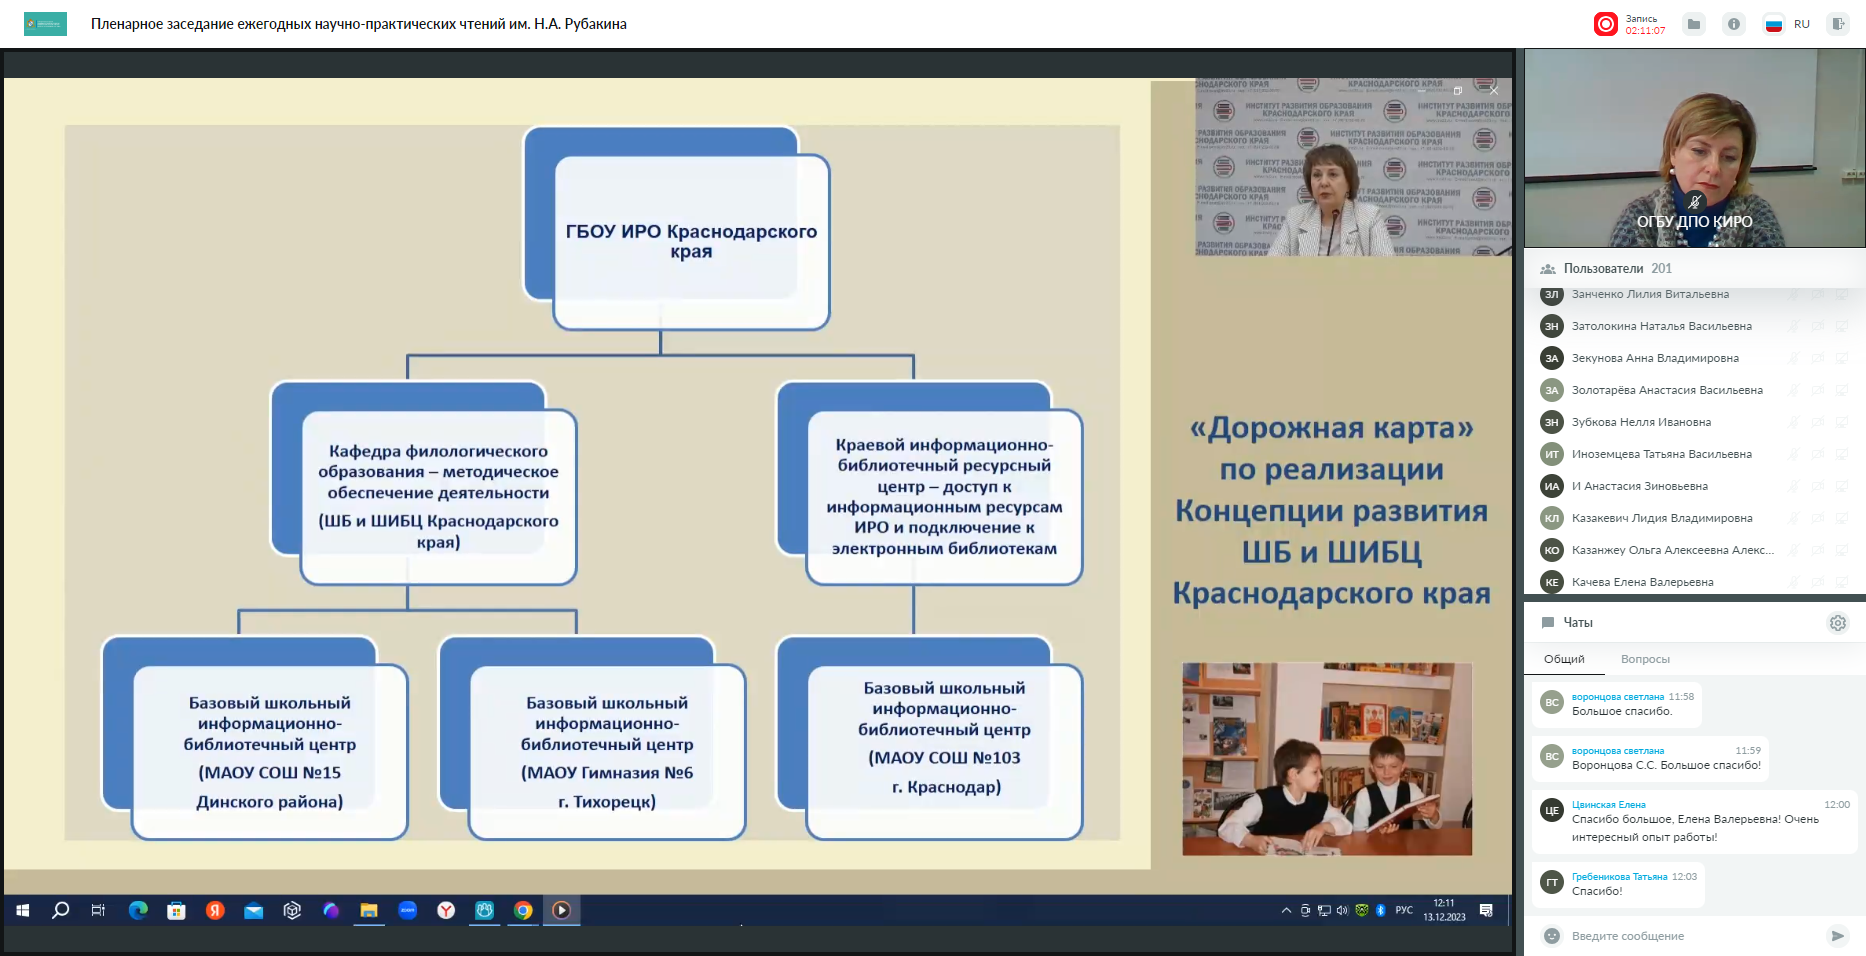 Кафедра филологического образования приняла участие в общероссийских научно-практических чтениях